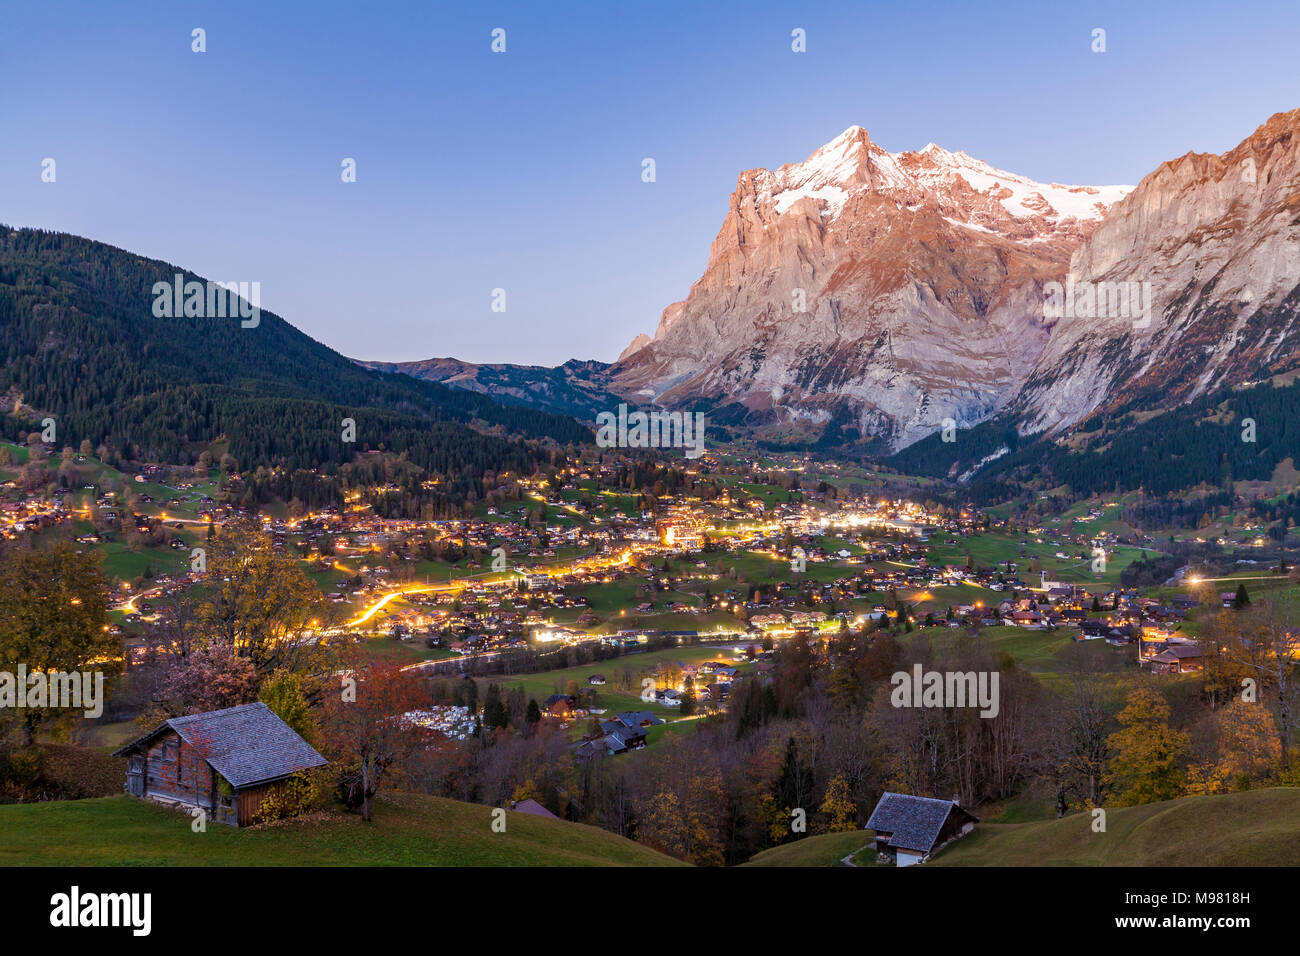 Schweiz, Kanton Bern, Berner Oberland, Grindelwald, Wetterhorn, Ferienort, Ortsansicht, Wohnhäuser, Chalets Stock Photo